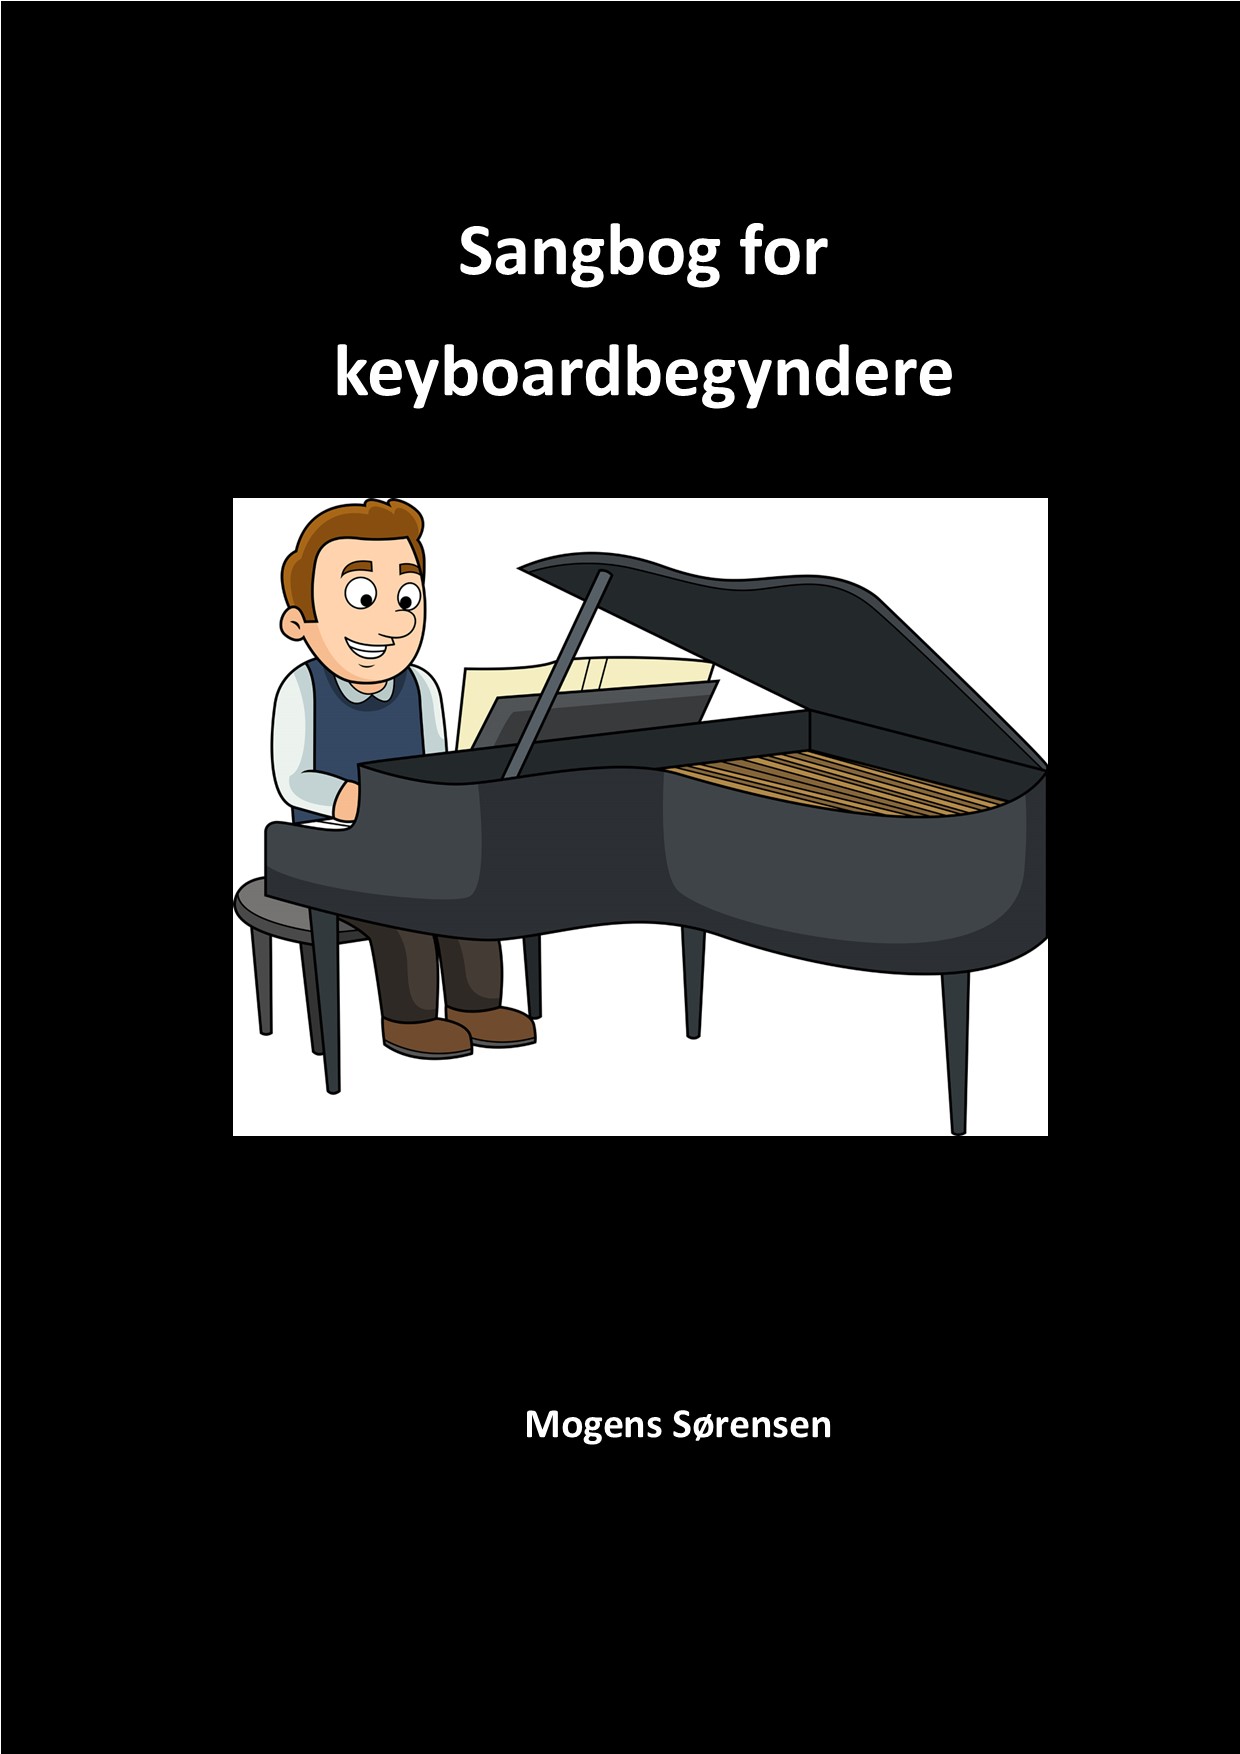 Coverbillede til Sangbog for keyboardbegyndere.